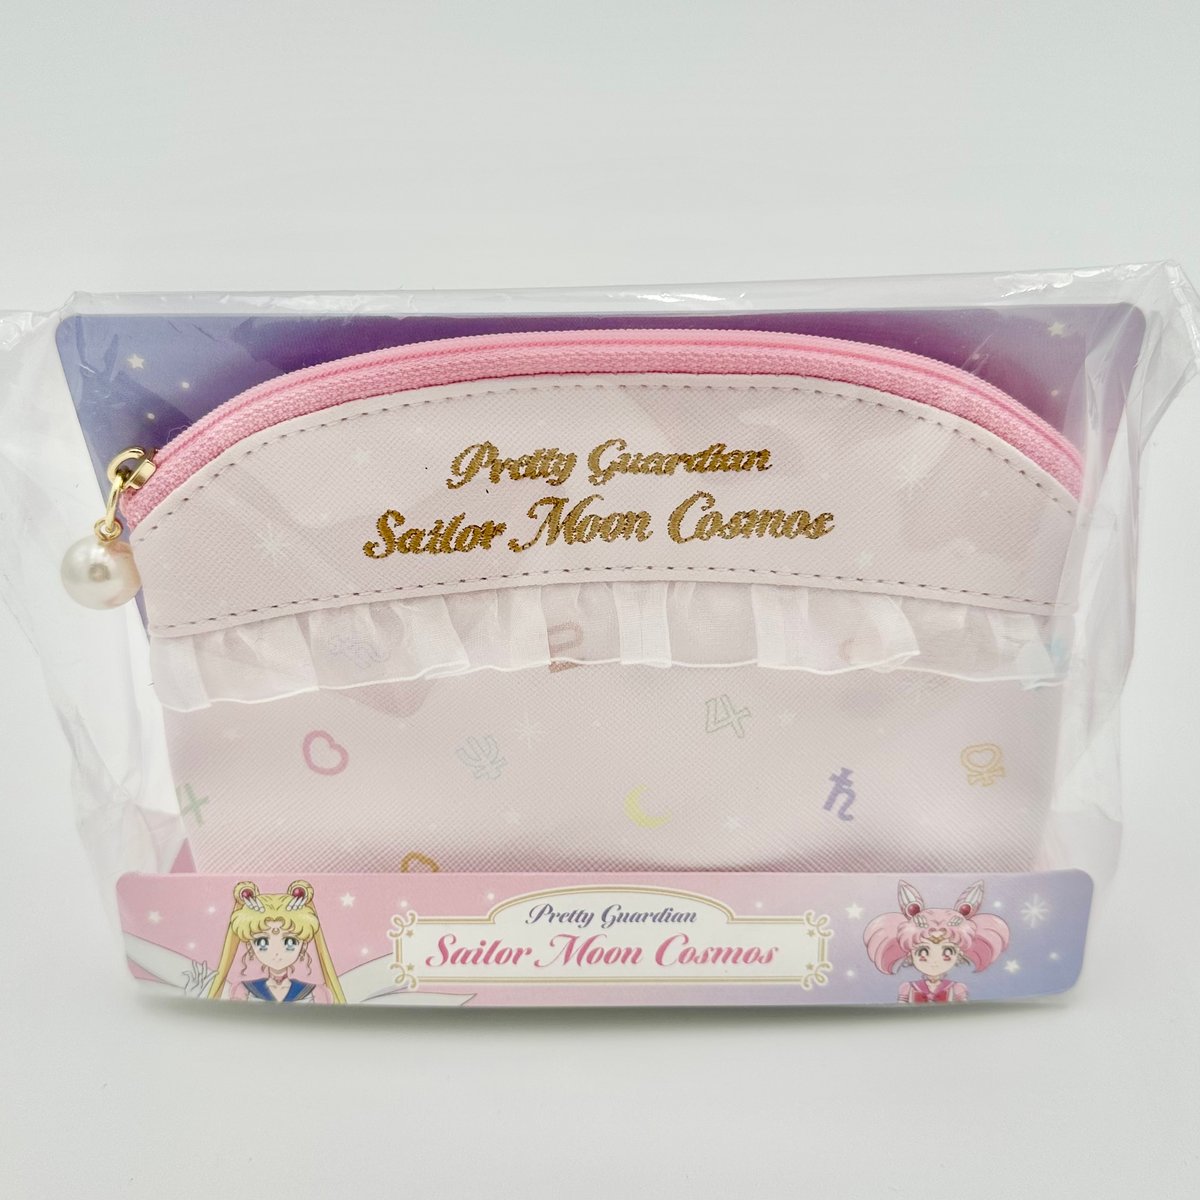 Pretty Guardian Sailor Moon Cosmos Vanity Bag